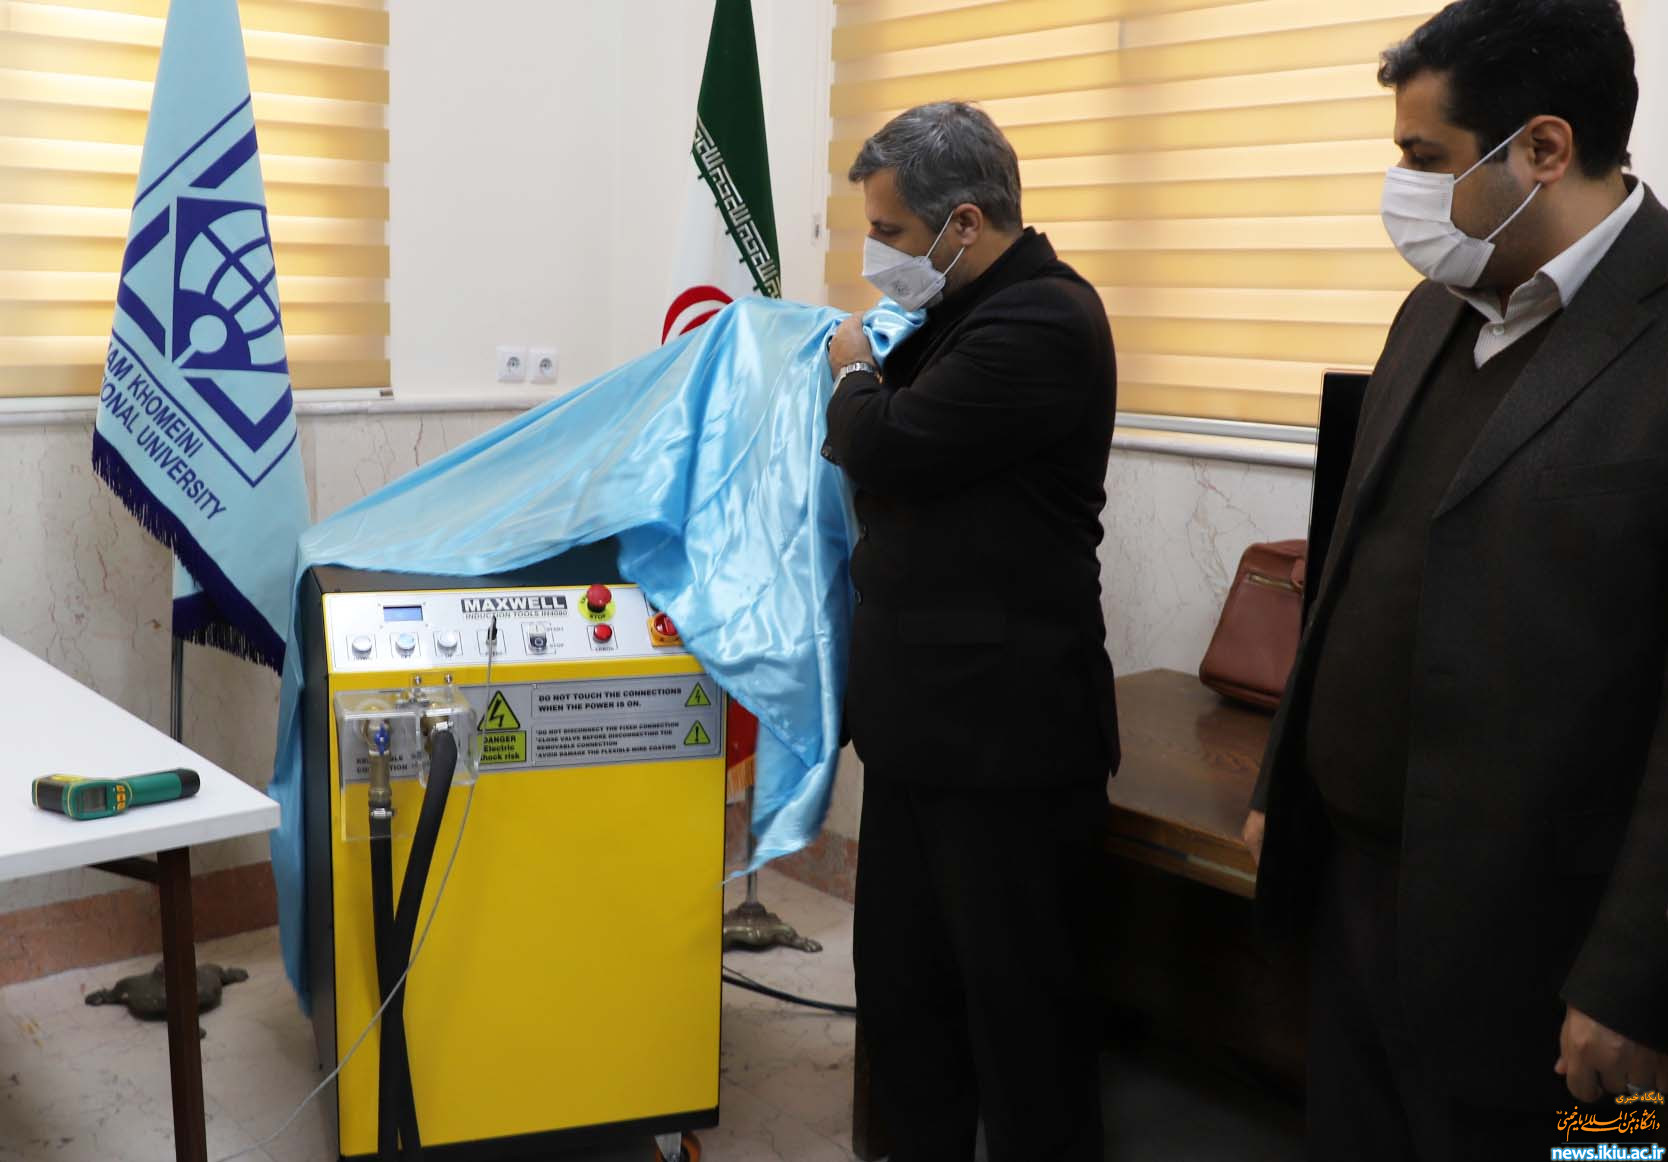 رونمایی از اولین نمونه داخلی دستگاه هیتر القایی با کویل منعطف در دانشگاه بین المللی امام خمینی (ره)